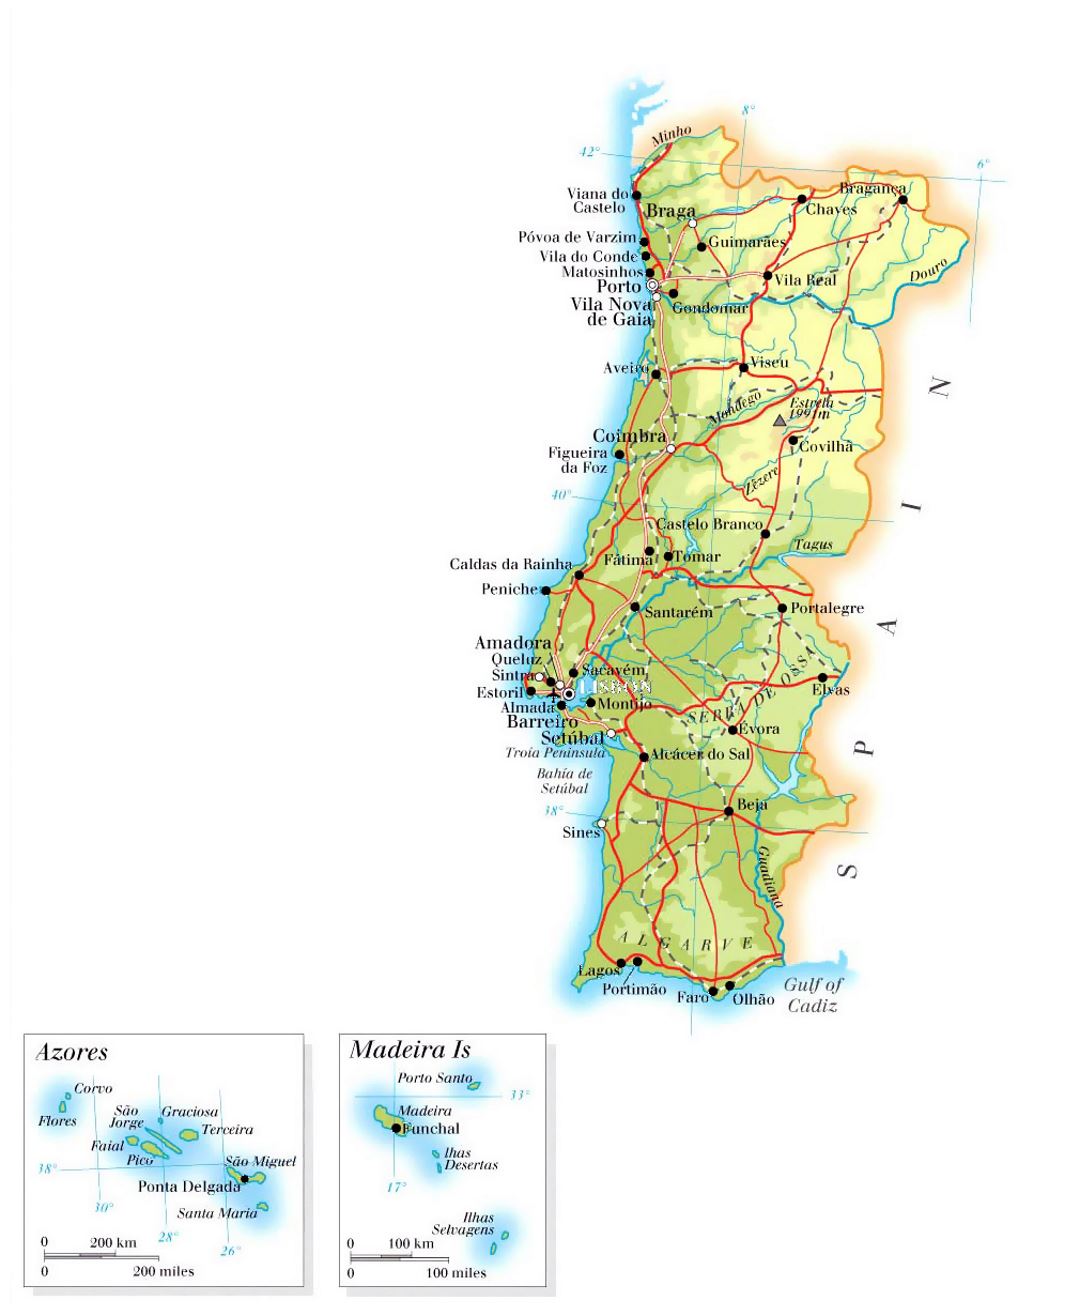 Большая карта высот Португалии с дорогами, городами и аэропортами